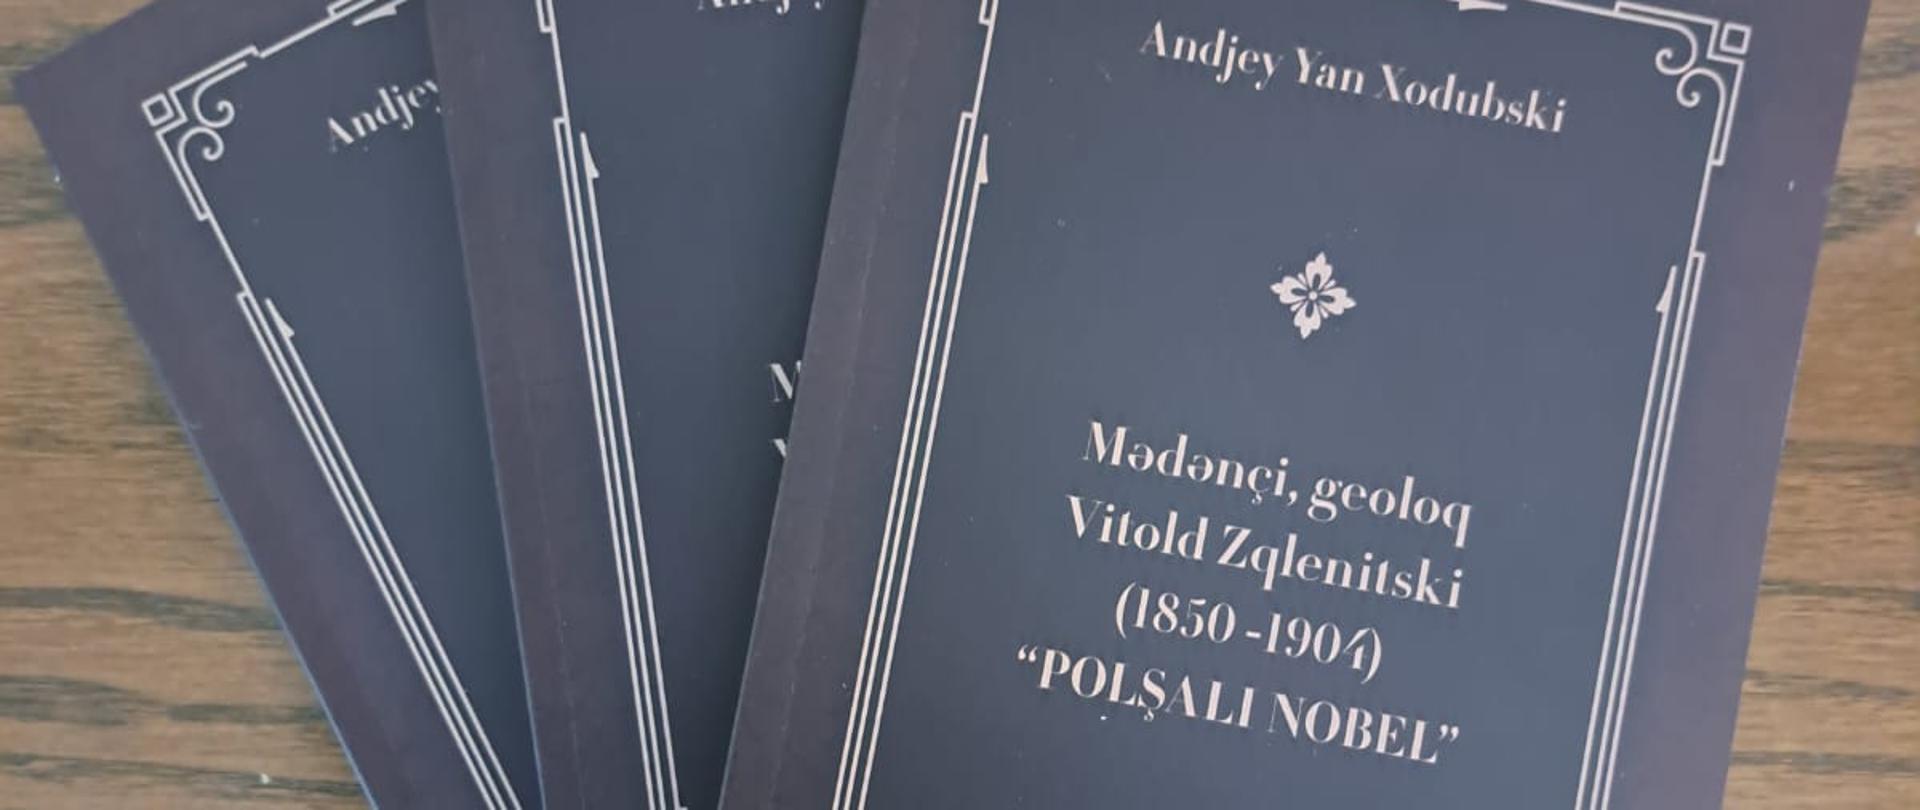 Azərbaycan neft-qaz sənayesinin banilərindən biri Vitold Zqlenitskinin həyatına dair kitabın azərbaycanca nəşri